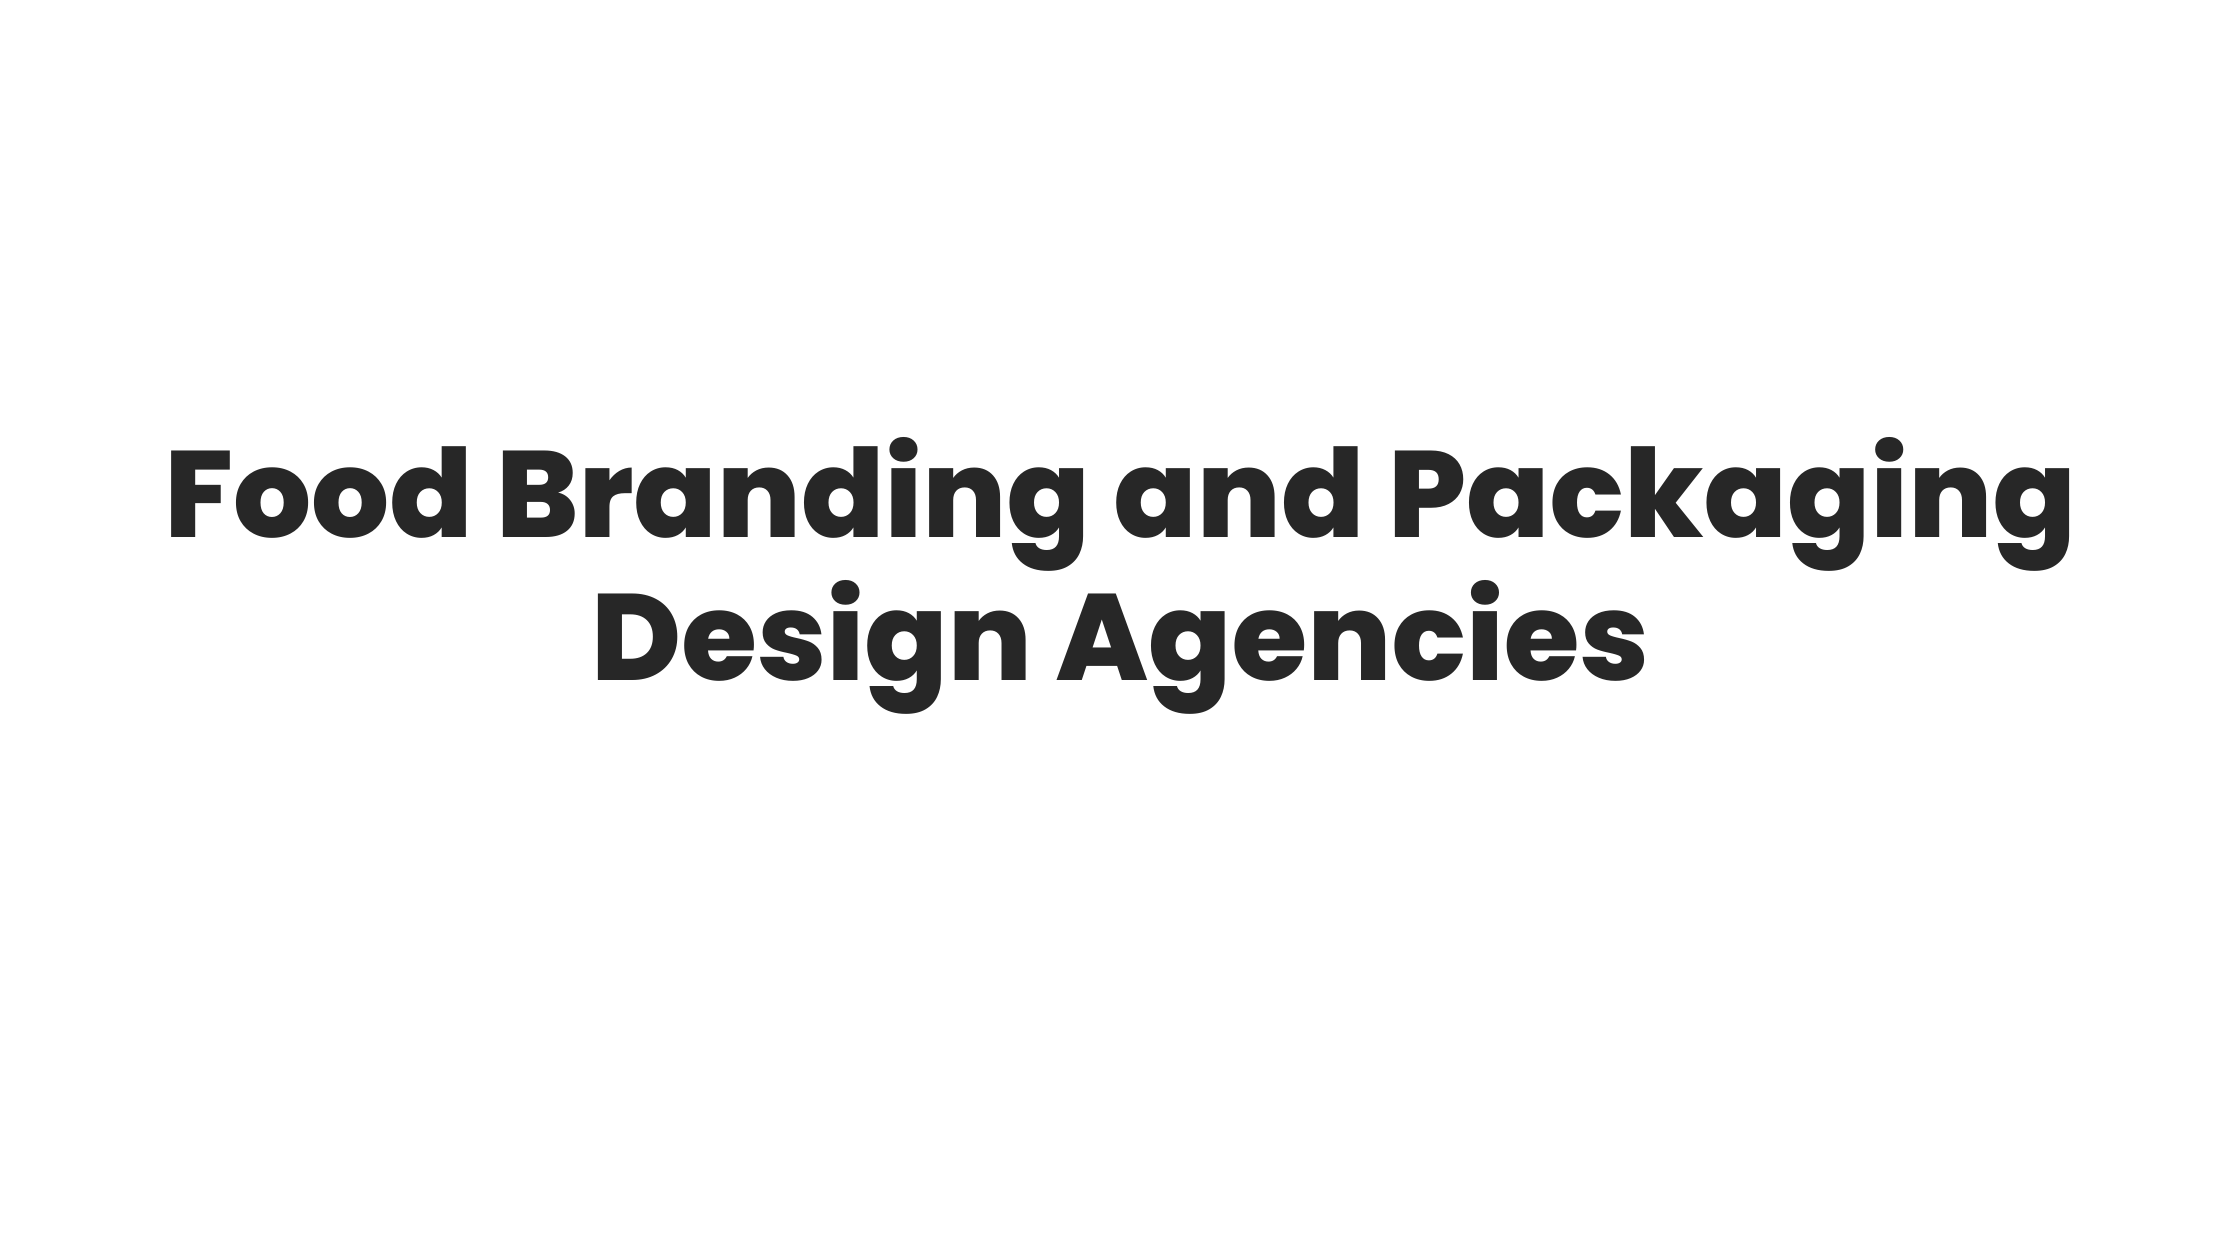 Food Branding and Packaging Design Agencies